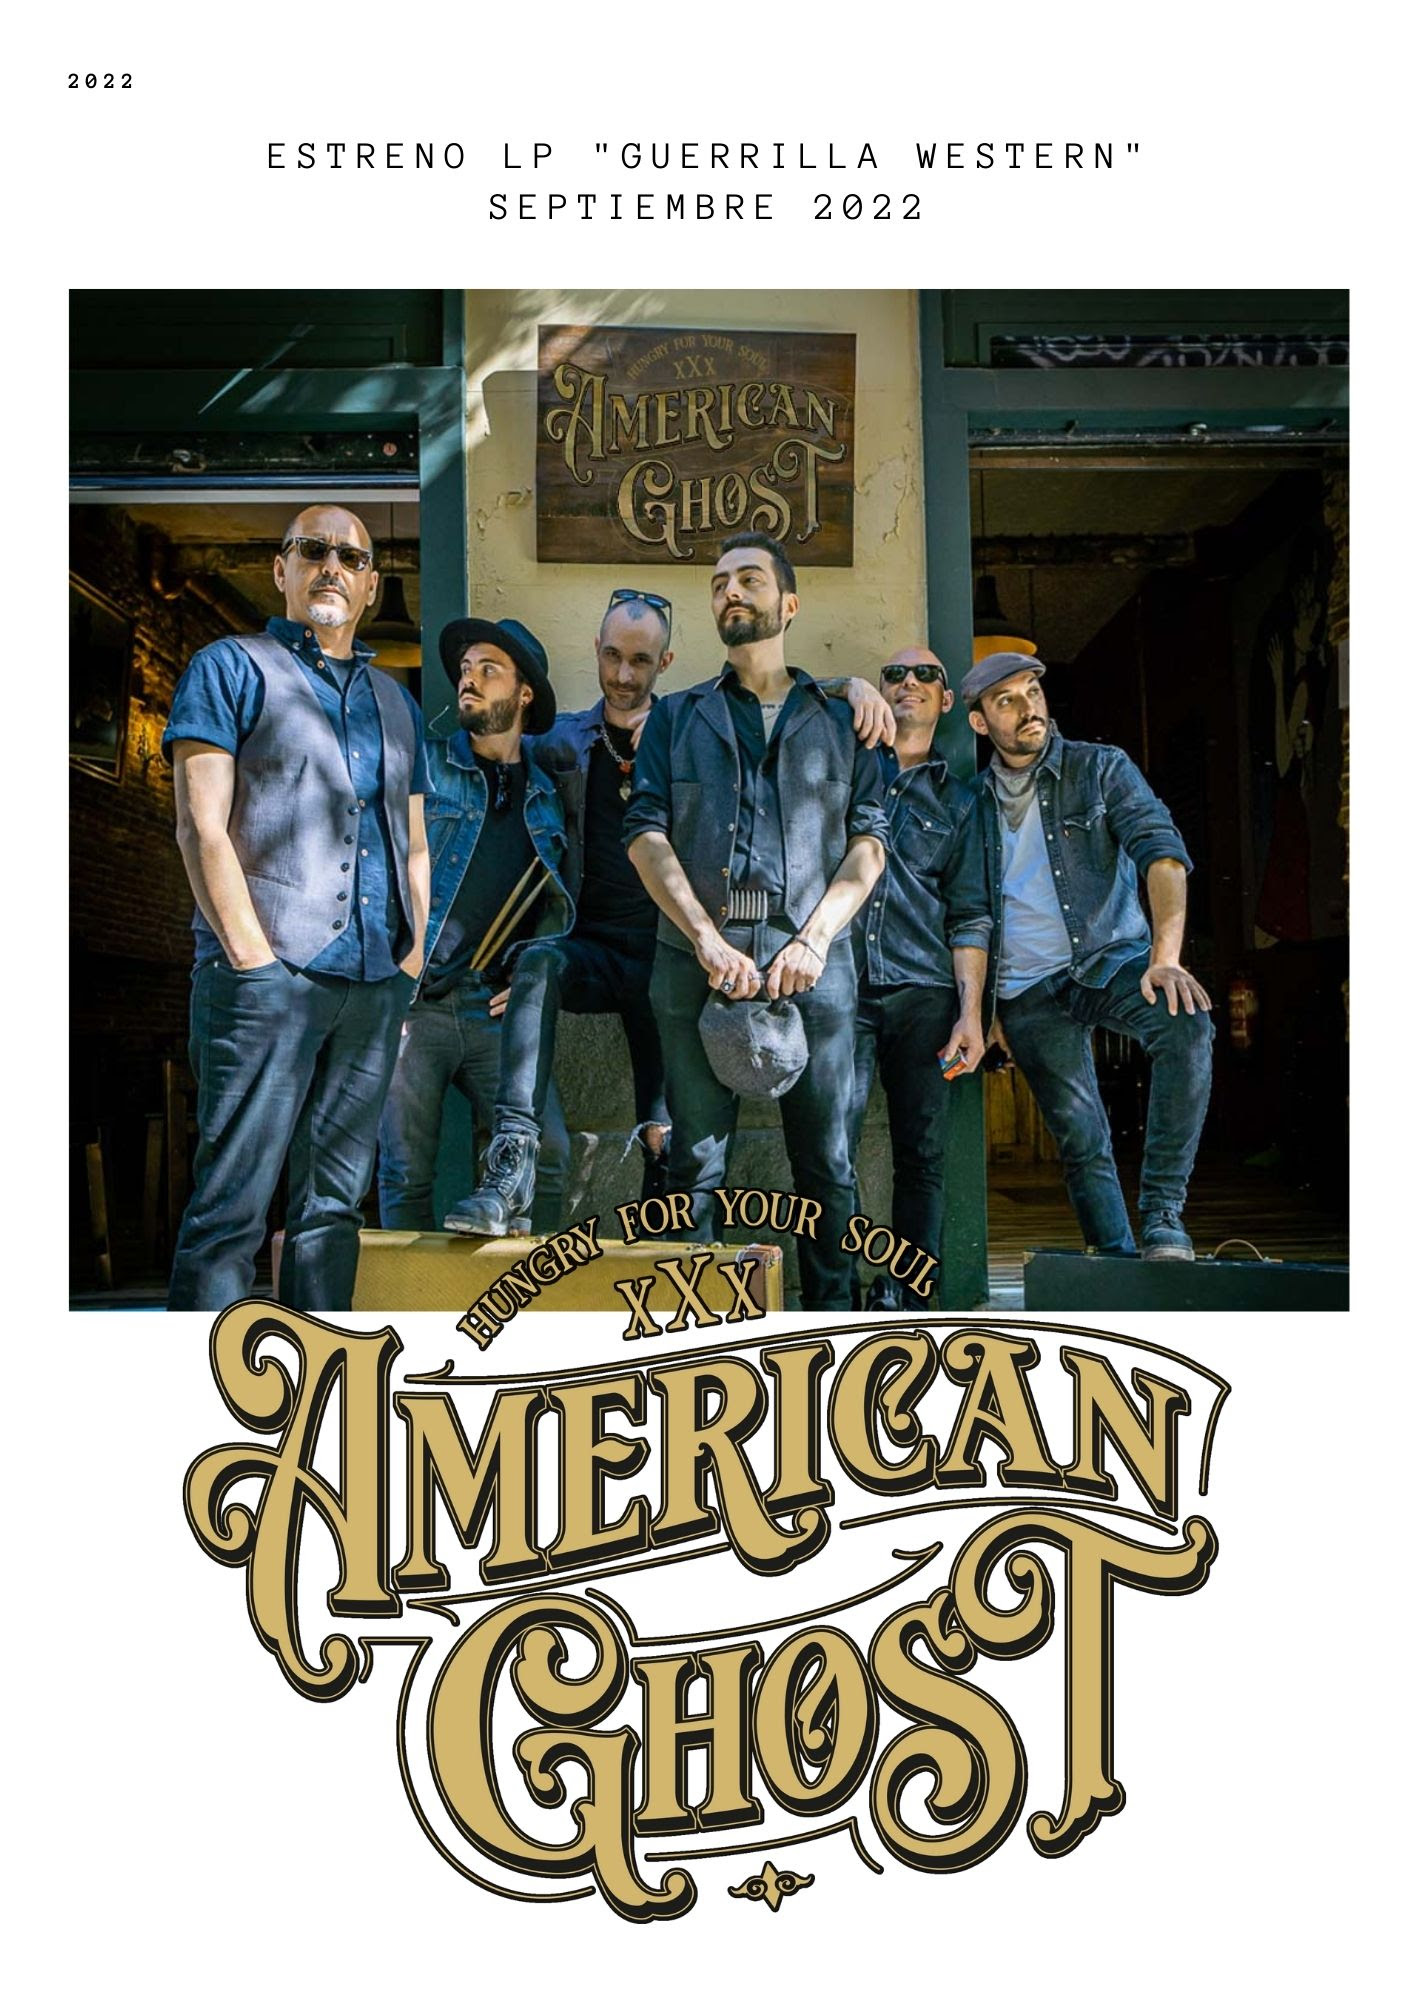 American Ghost nuevas fechas antes de presentar su nuevo disco